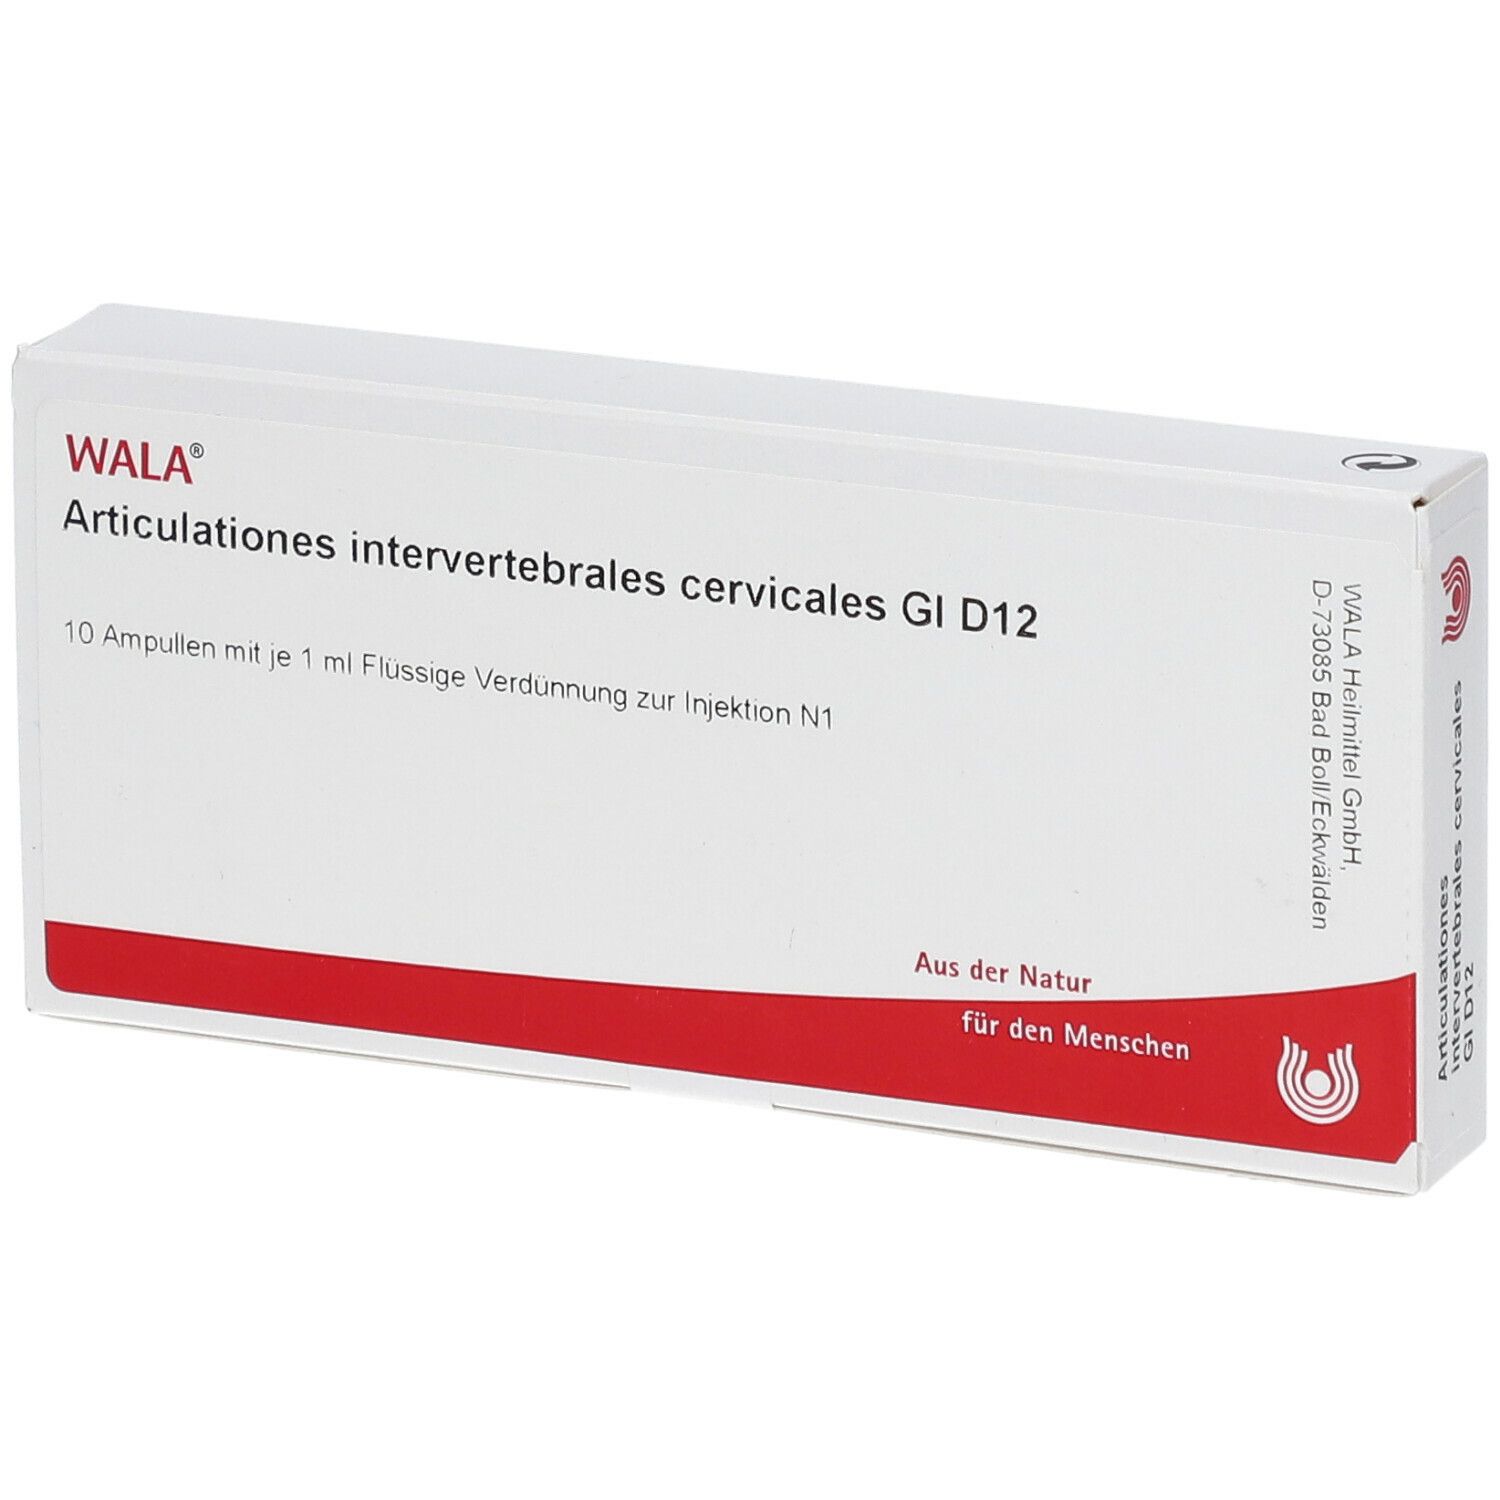 Wala® Articulationes intervertebrales cervicales Gl D 12